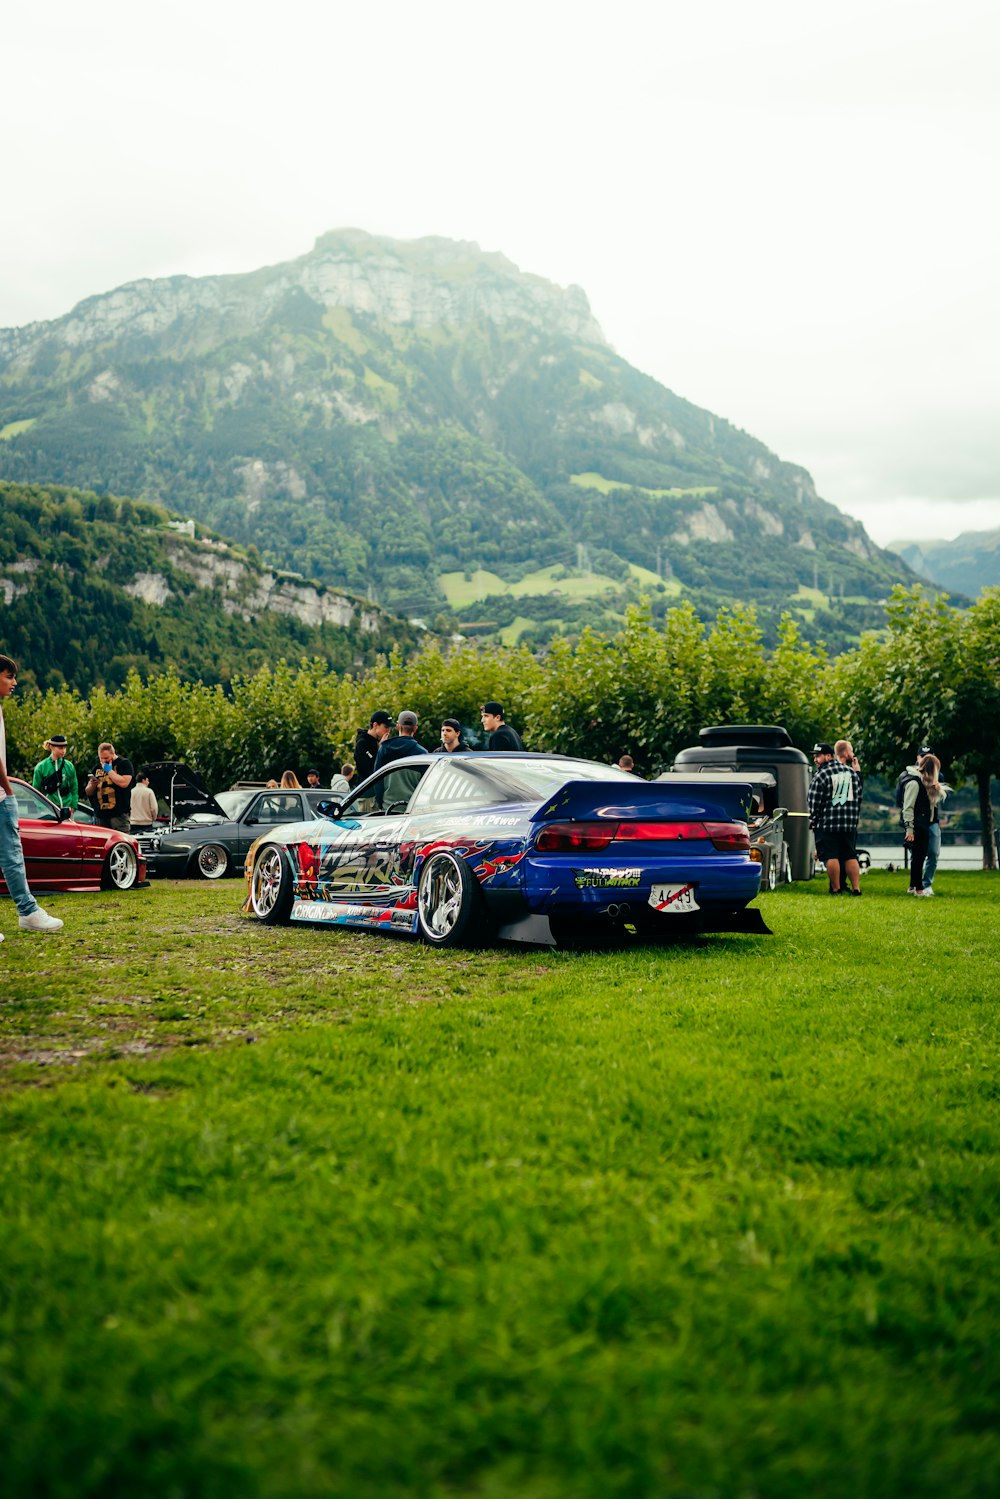 Eine Gruppe von Autos, die auf einem Feld neben einem Berg geparkt sind